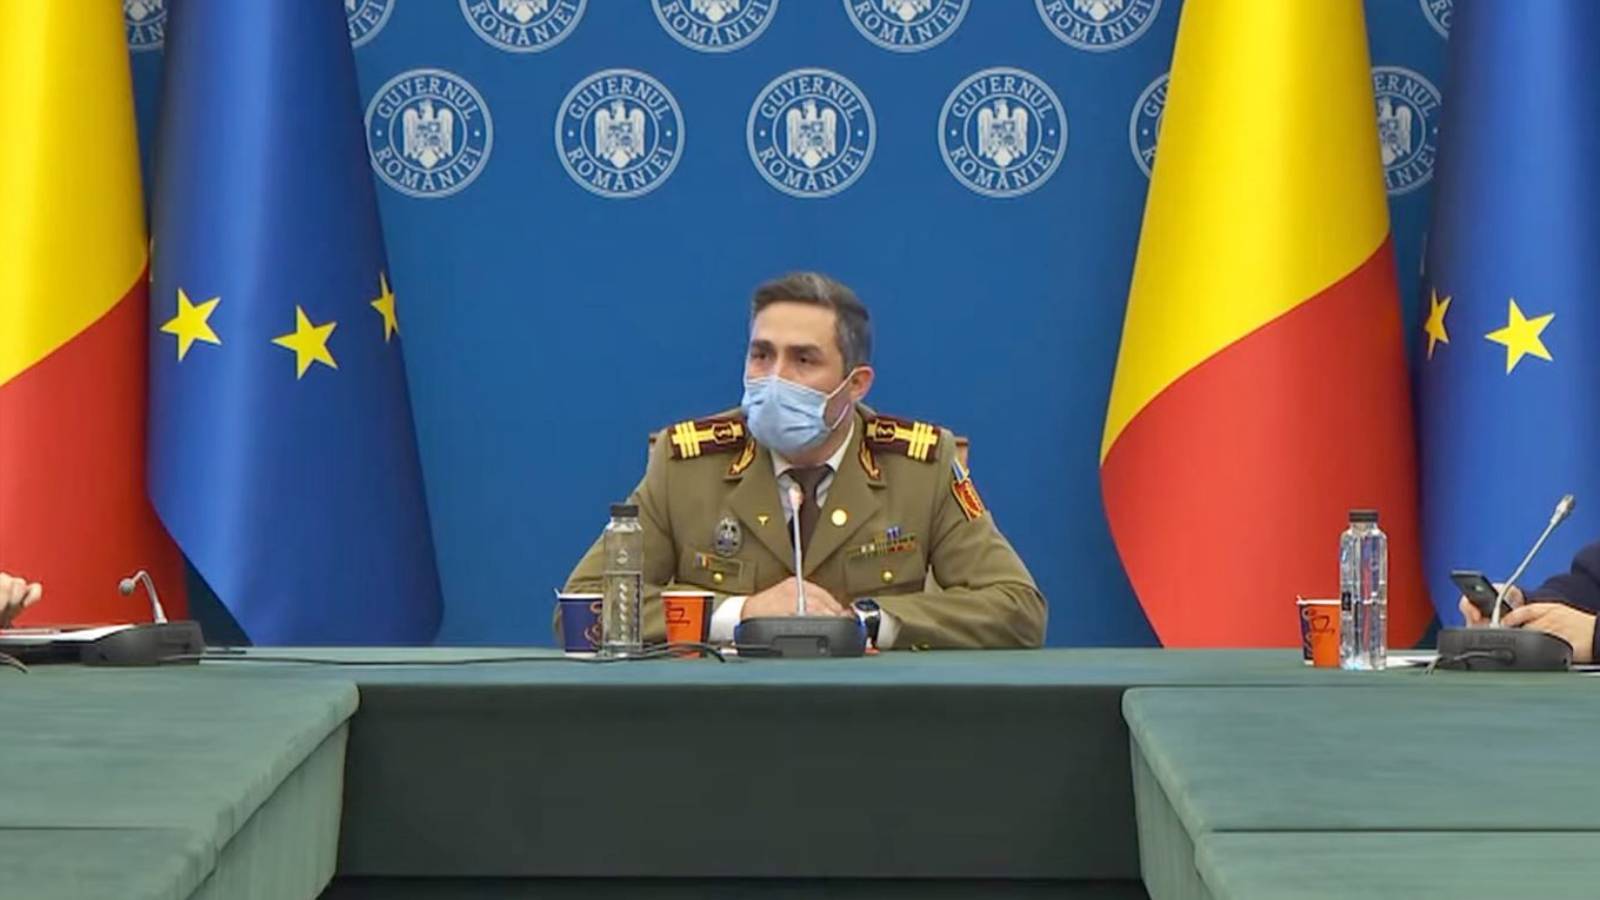 Valeriu Gheorghita Annuncio ufficiale Romania Piena ondata 5 COVID-19